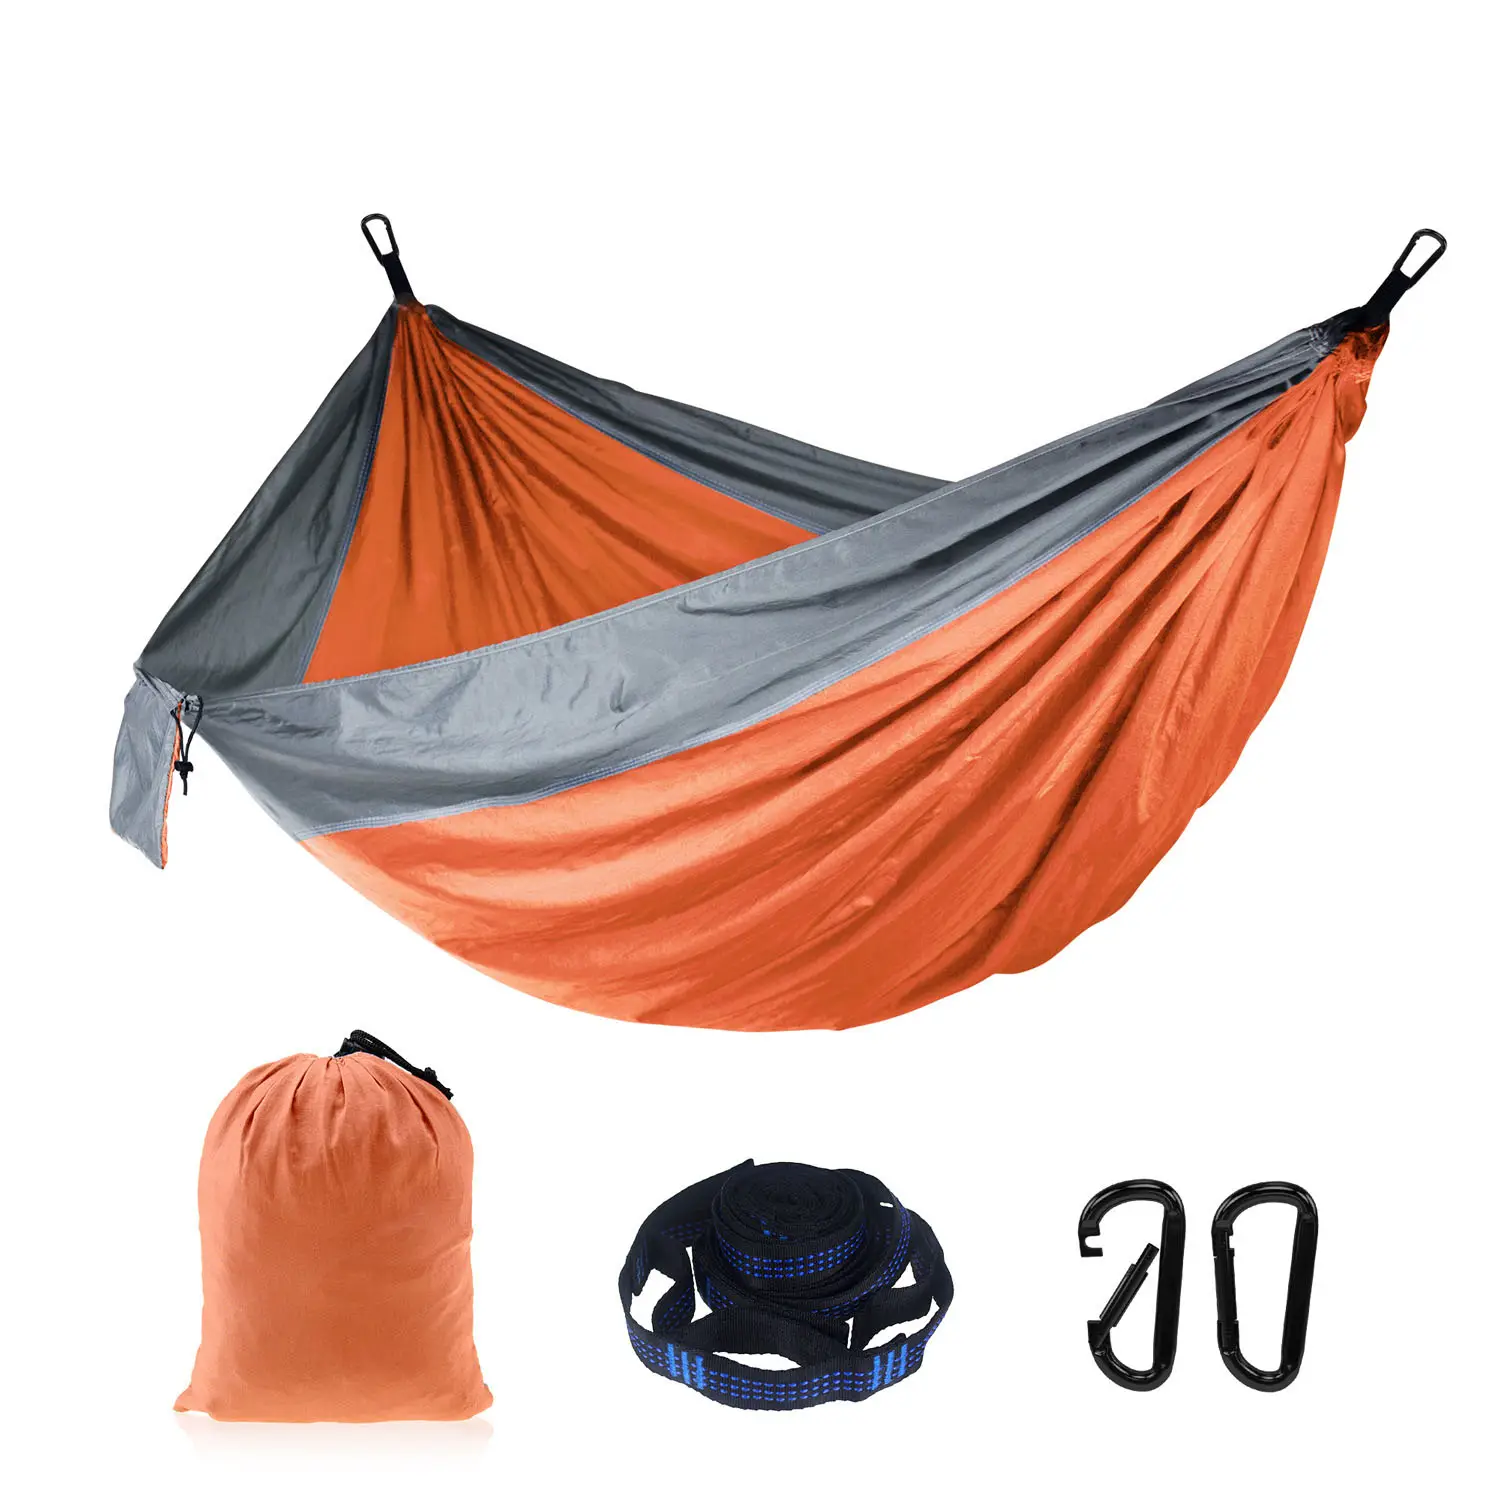 Tragbares Nylon New Outdoor Camping Hängende Klapp strick Hängematte/Hängematten bett im Freien